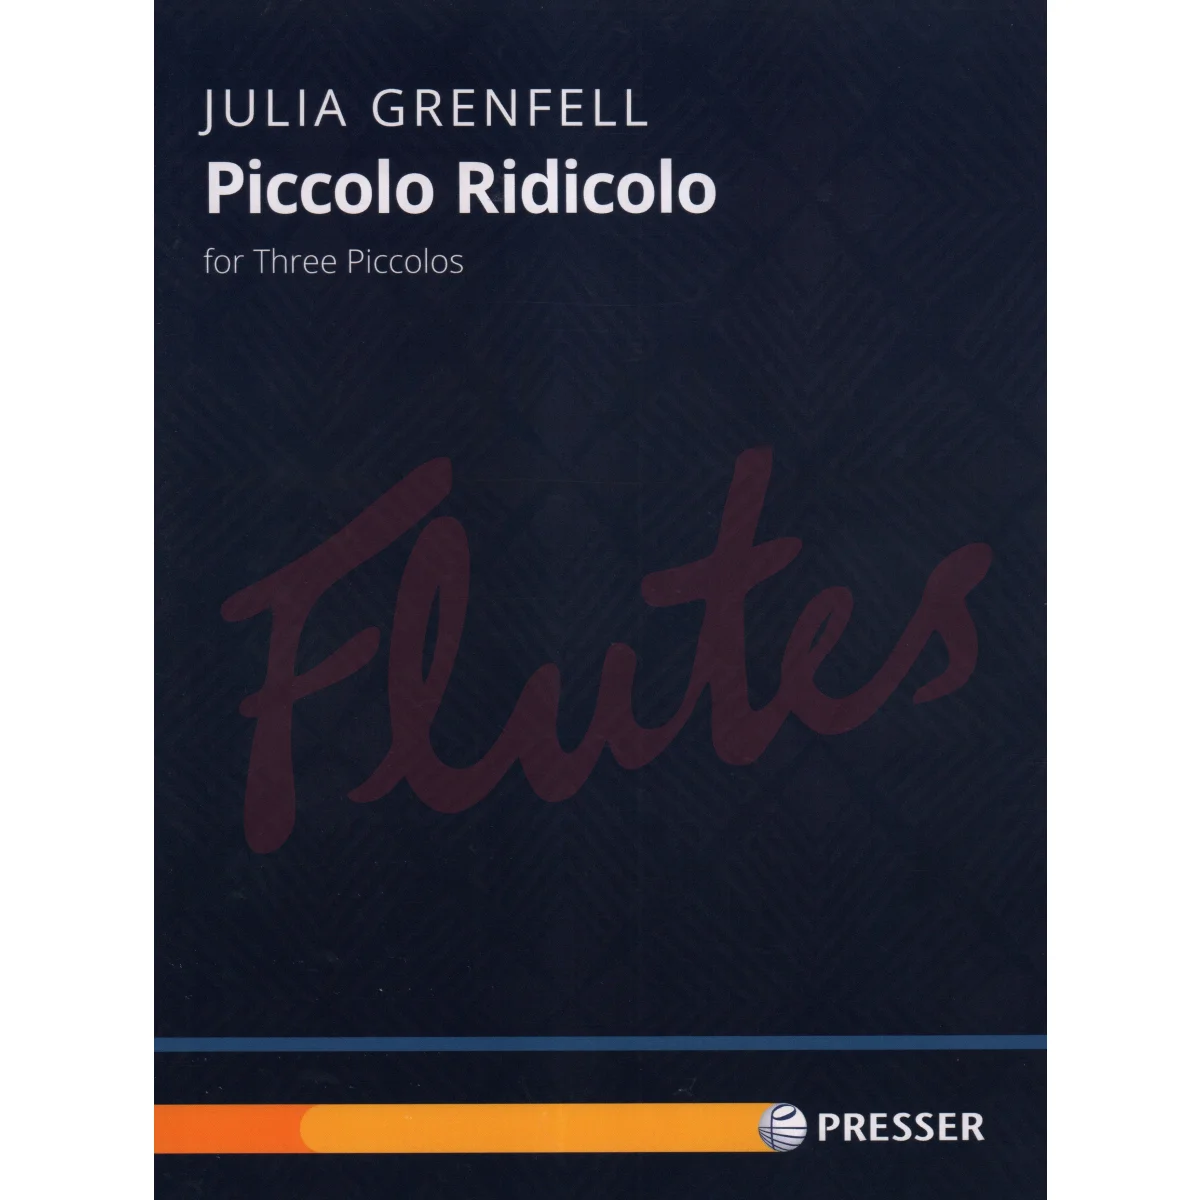 Piccolo Ridicolo for Three Piccolos